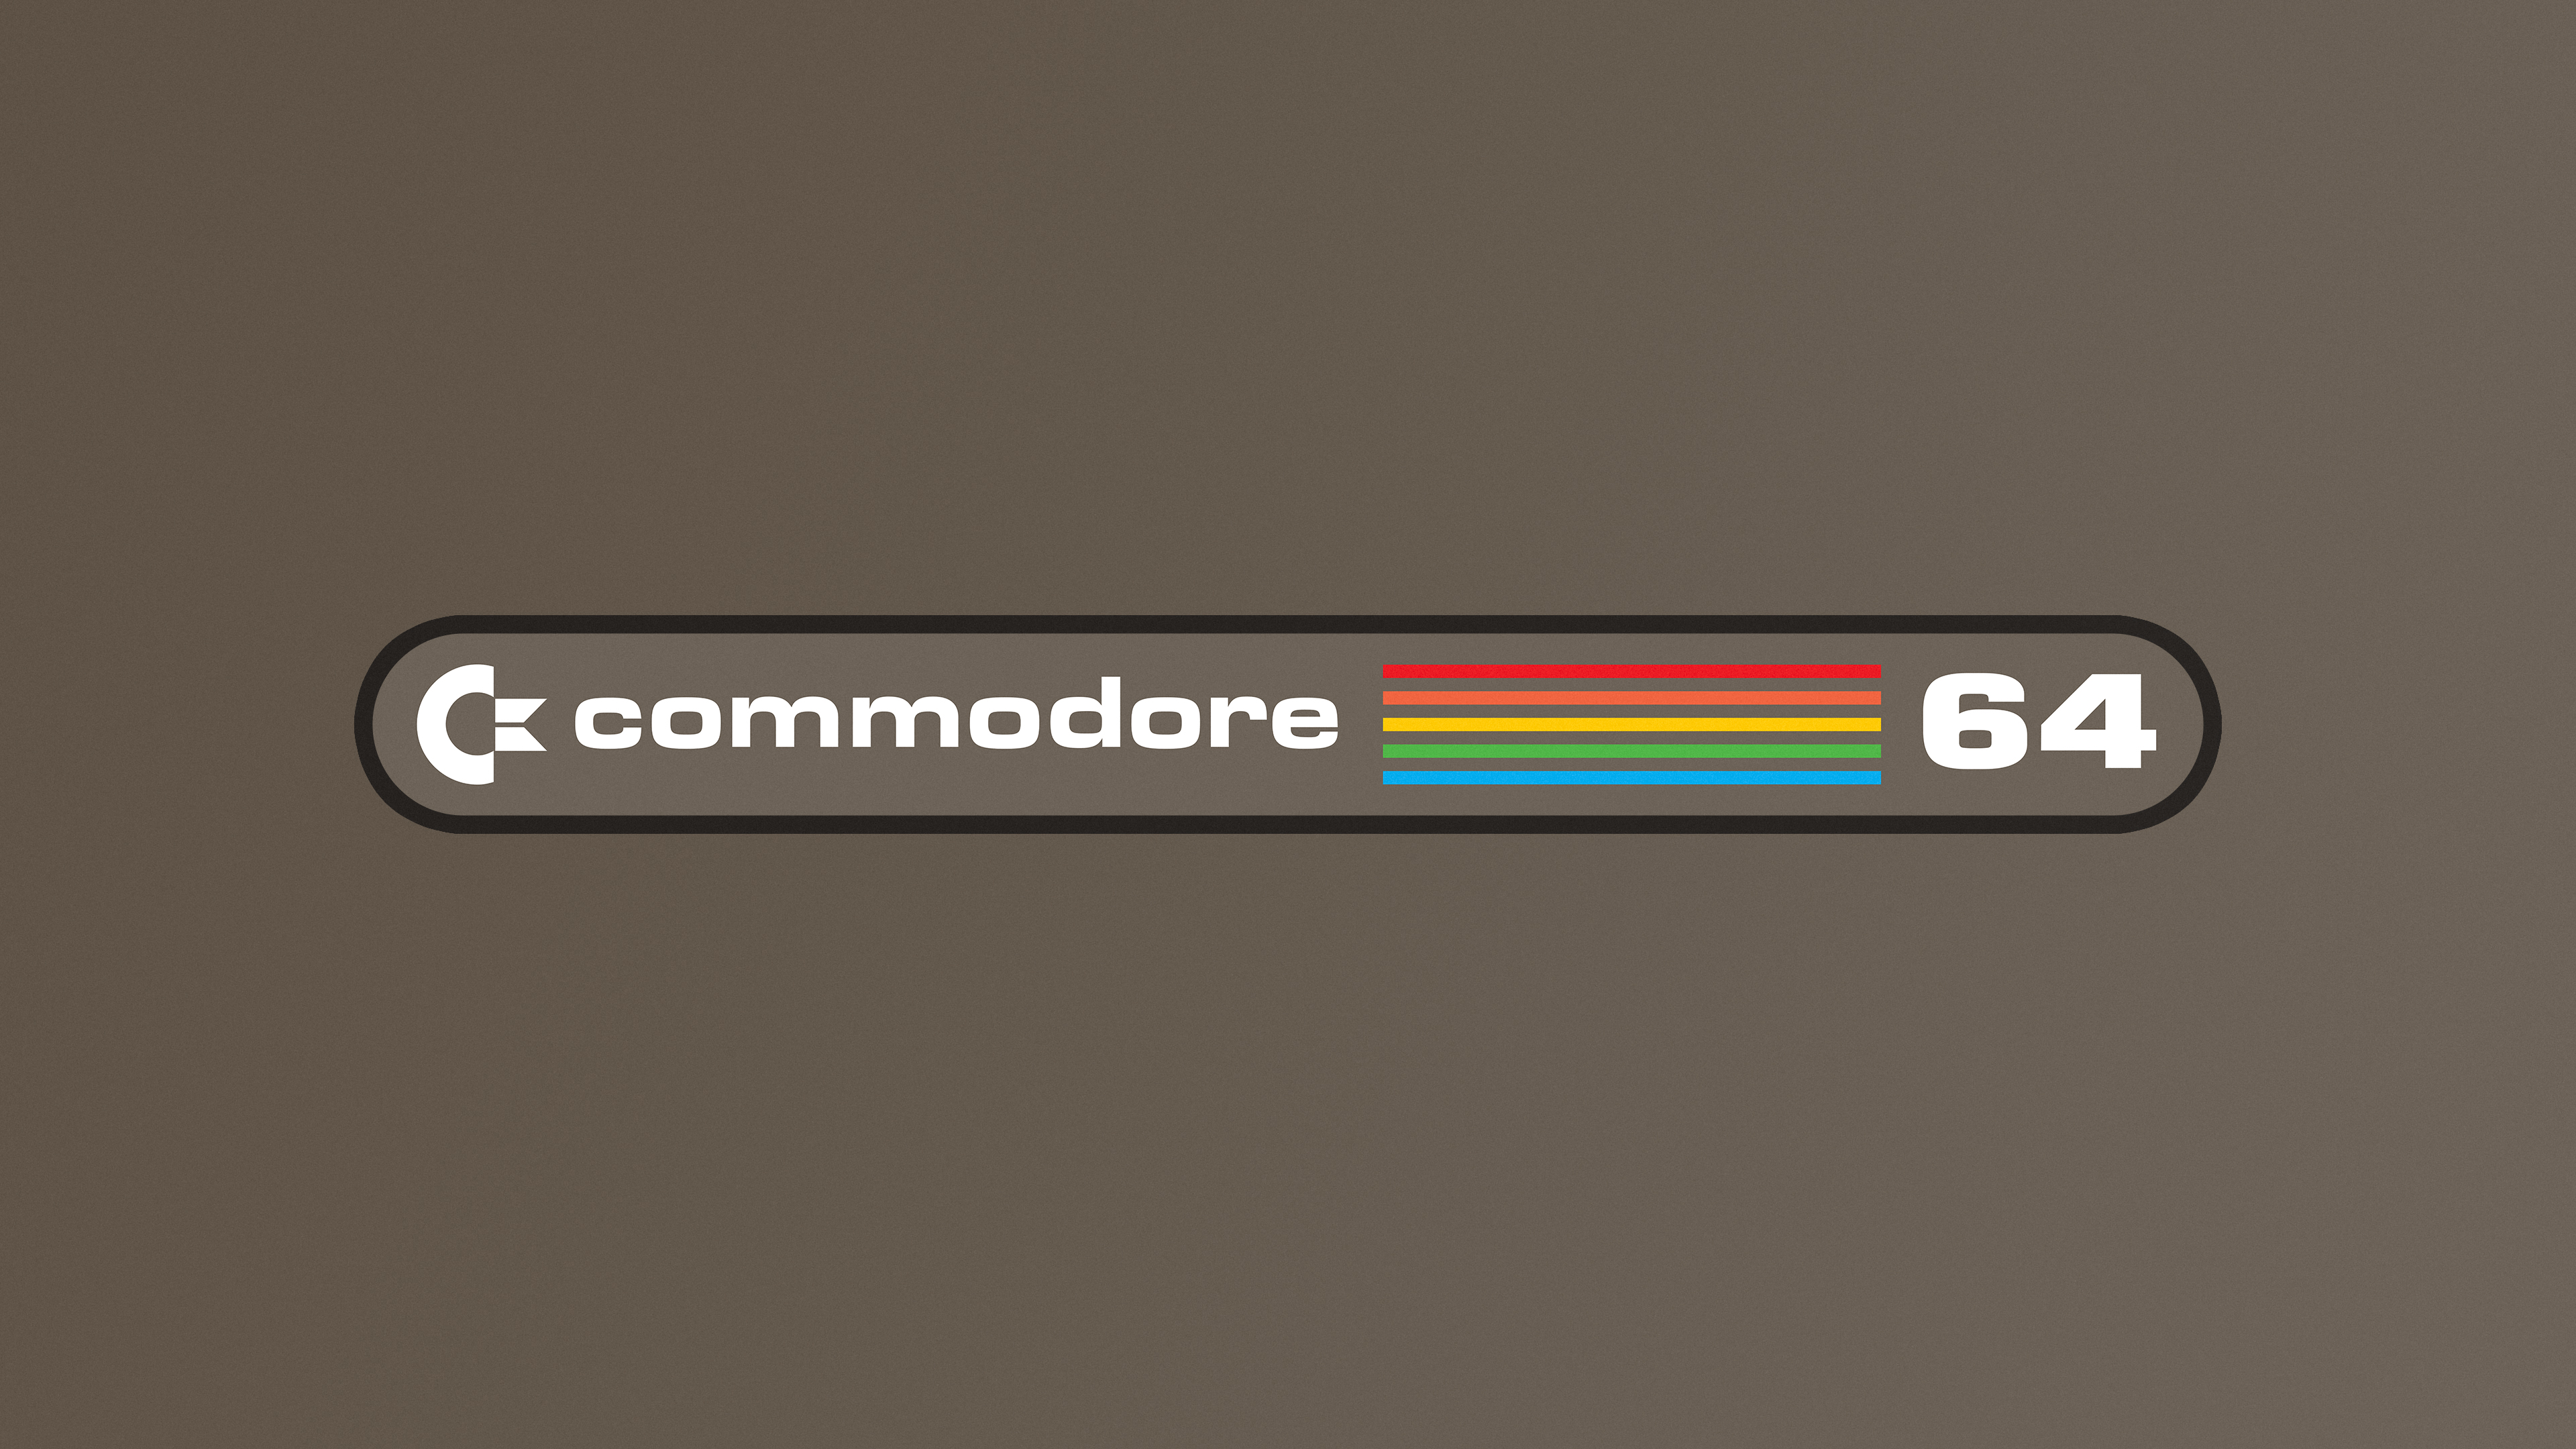 Commodore Commodore 64 Retro Computers Video Games 1980s 3840x2160